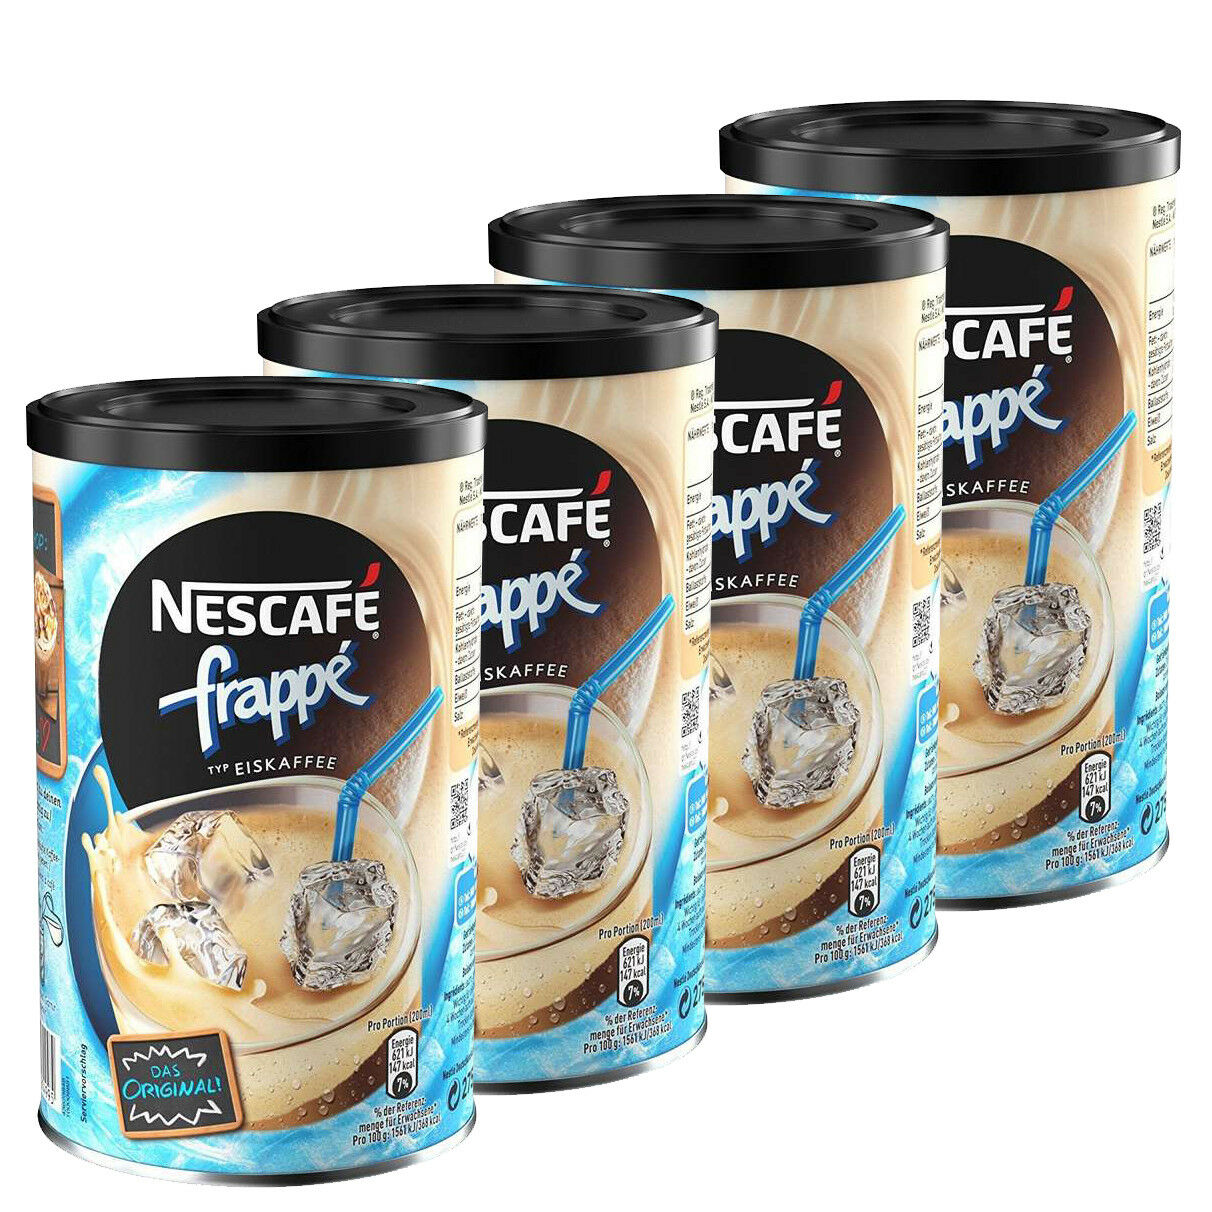 https://www.germanbuy.net/wp-content/uploads/2019/10/Nescafe-frappe-Instant-Ice-Coffee.jpg